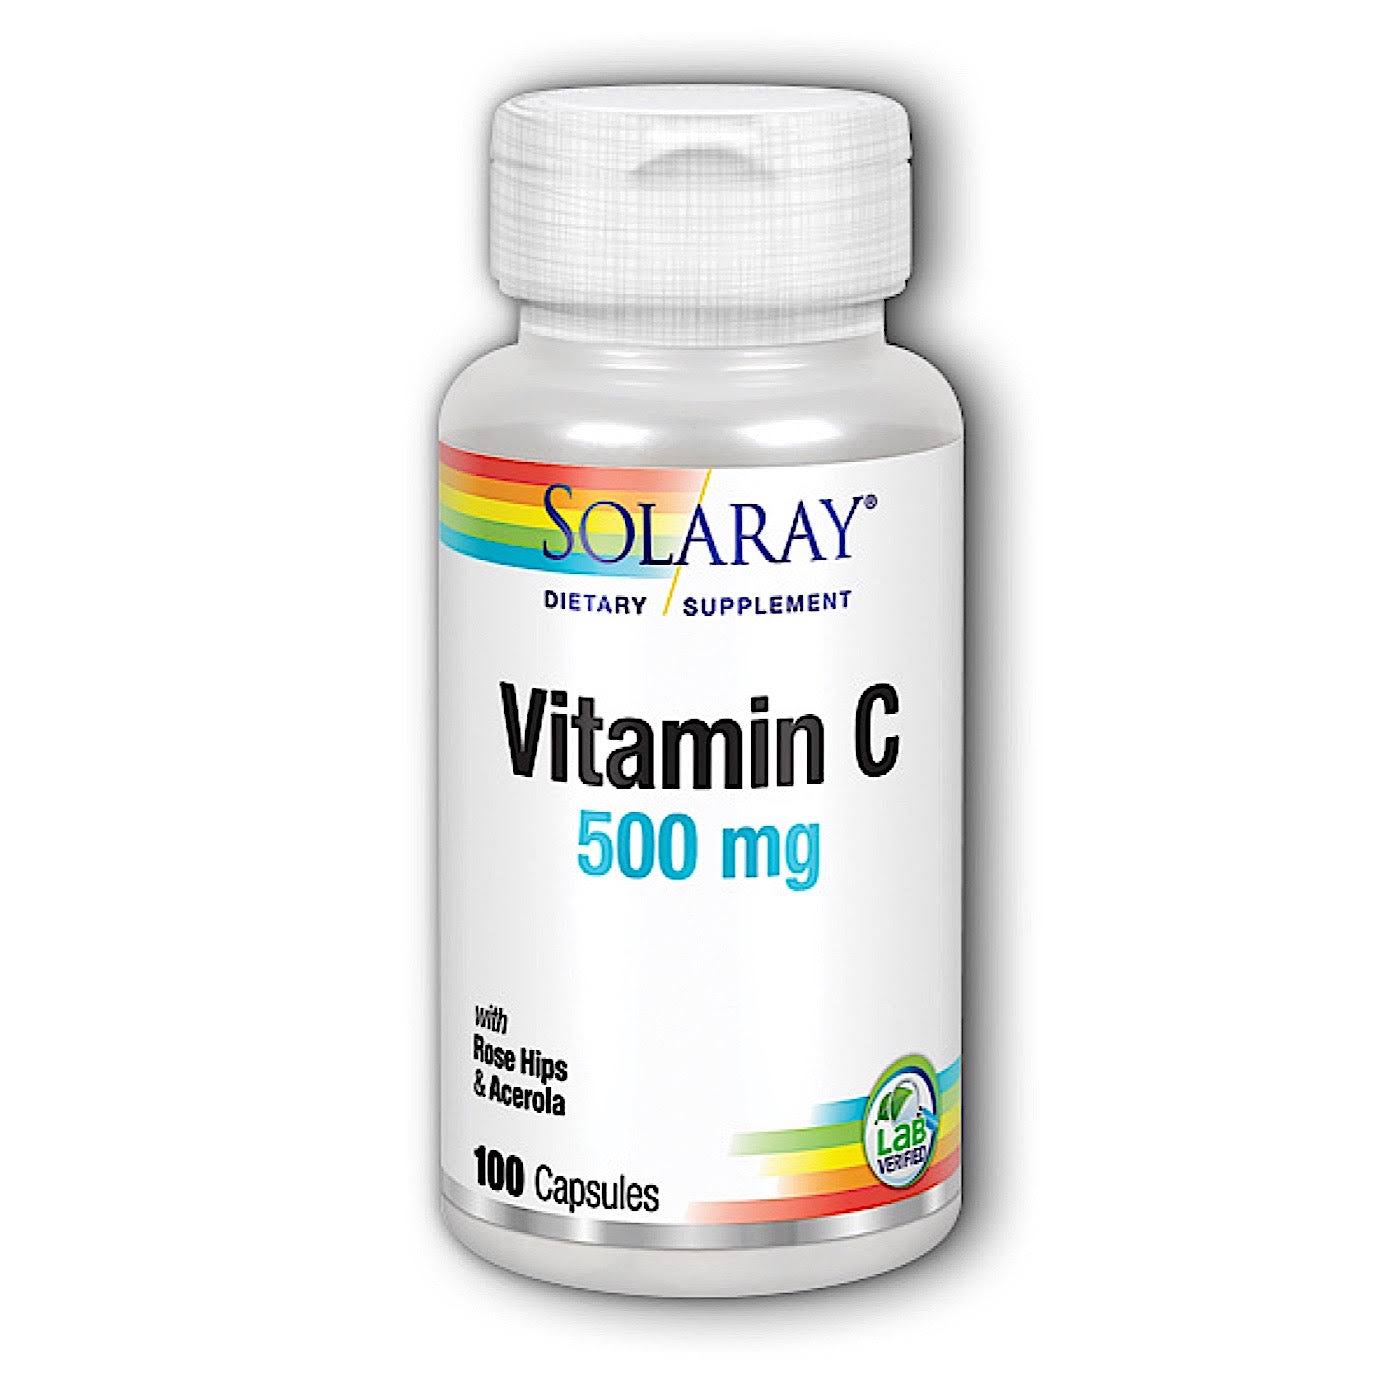 Solaray Vitamin C - 500mg, 100 Capsules